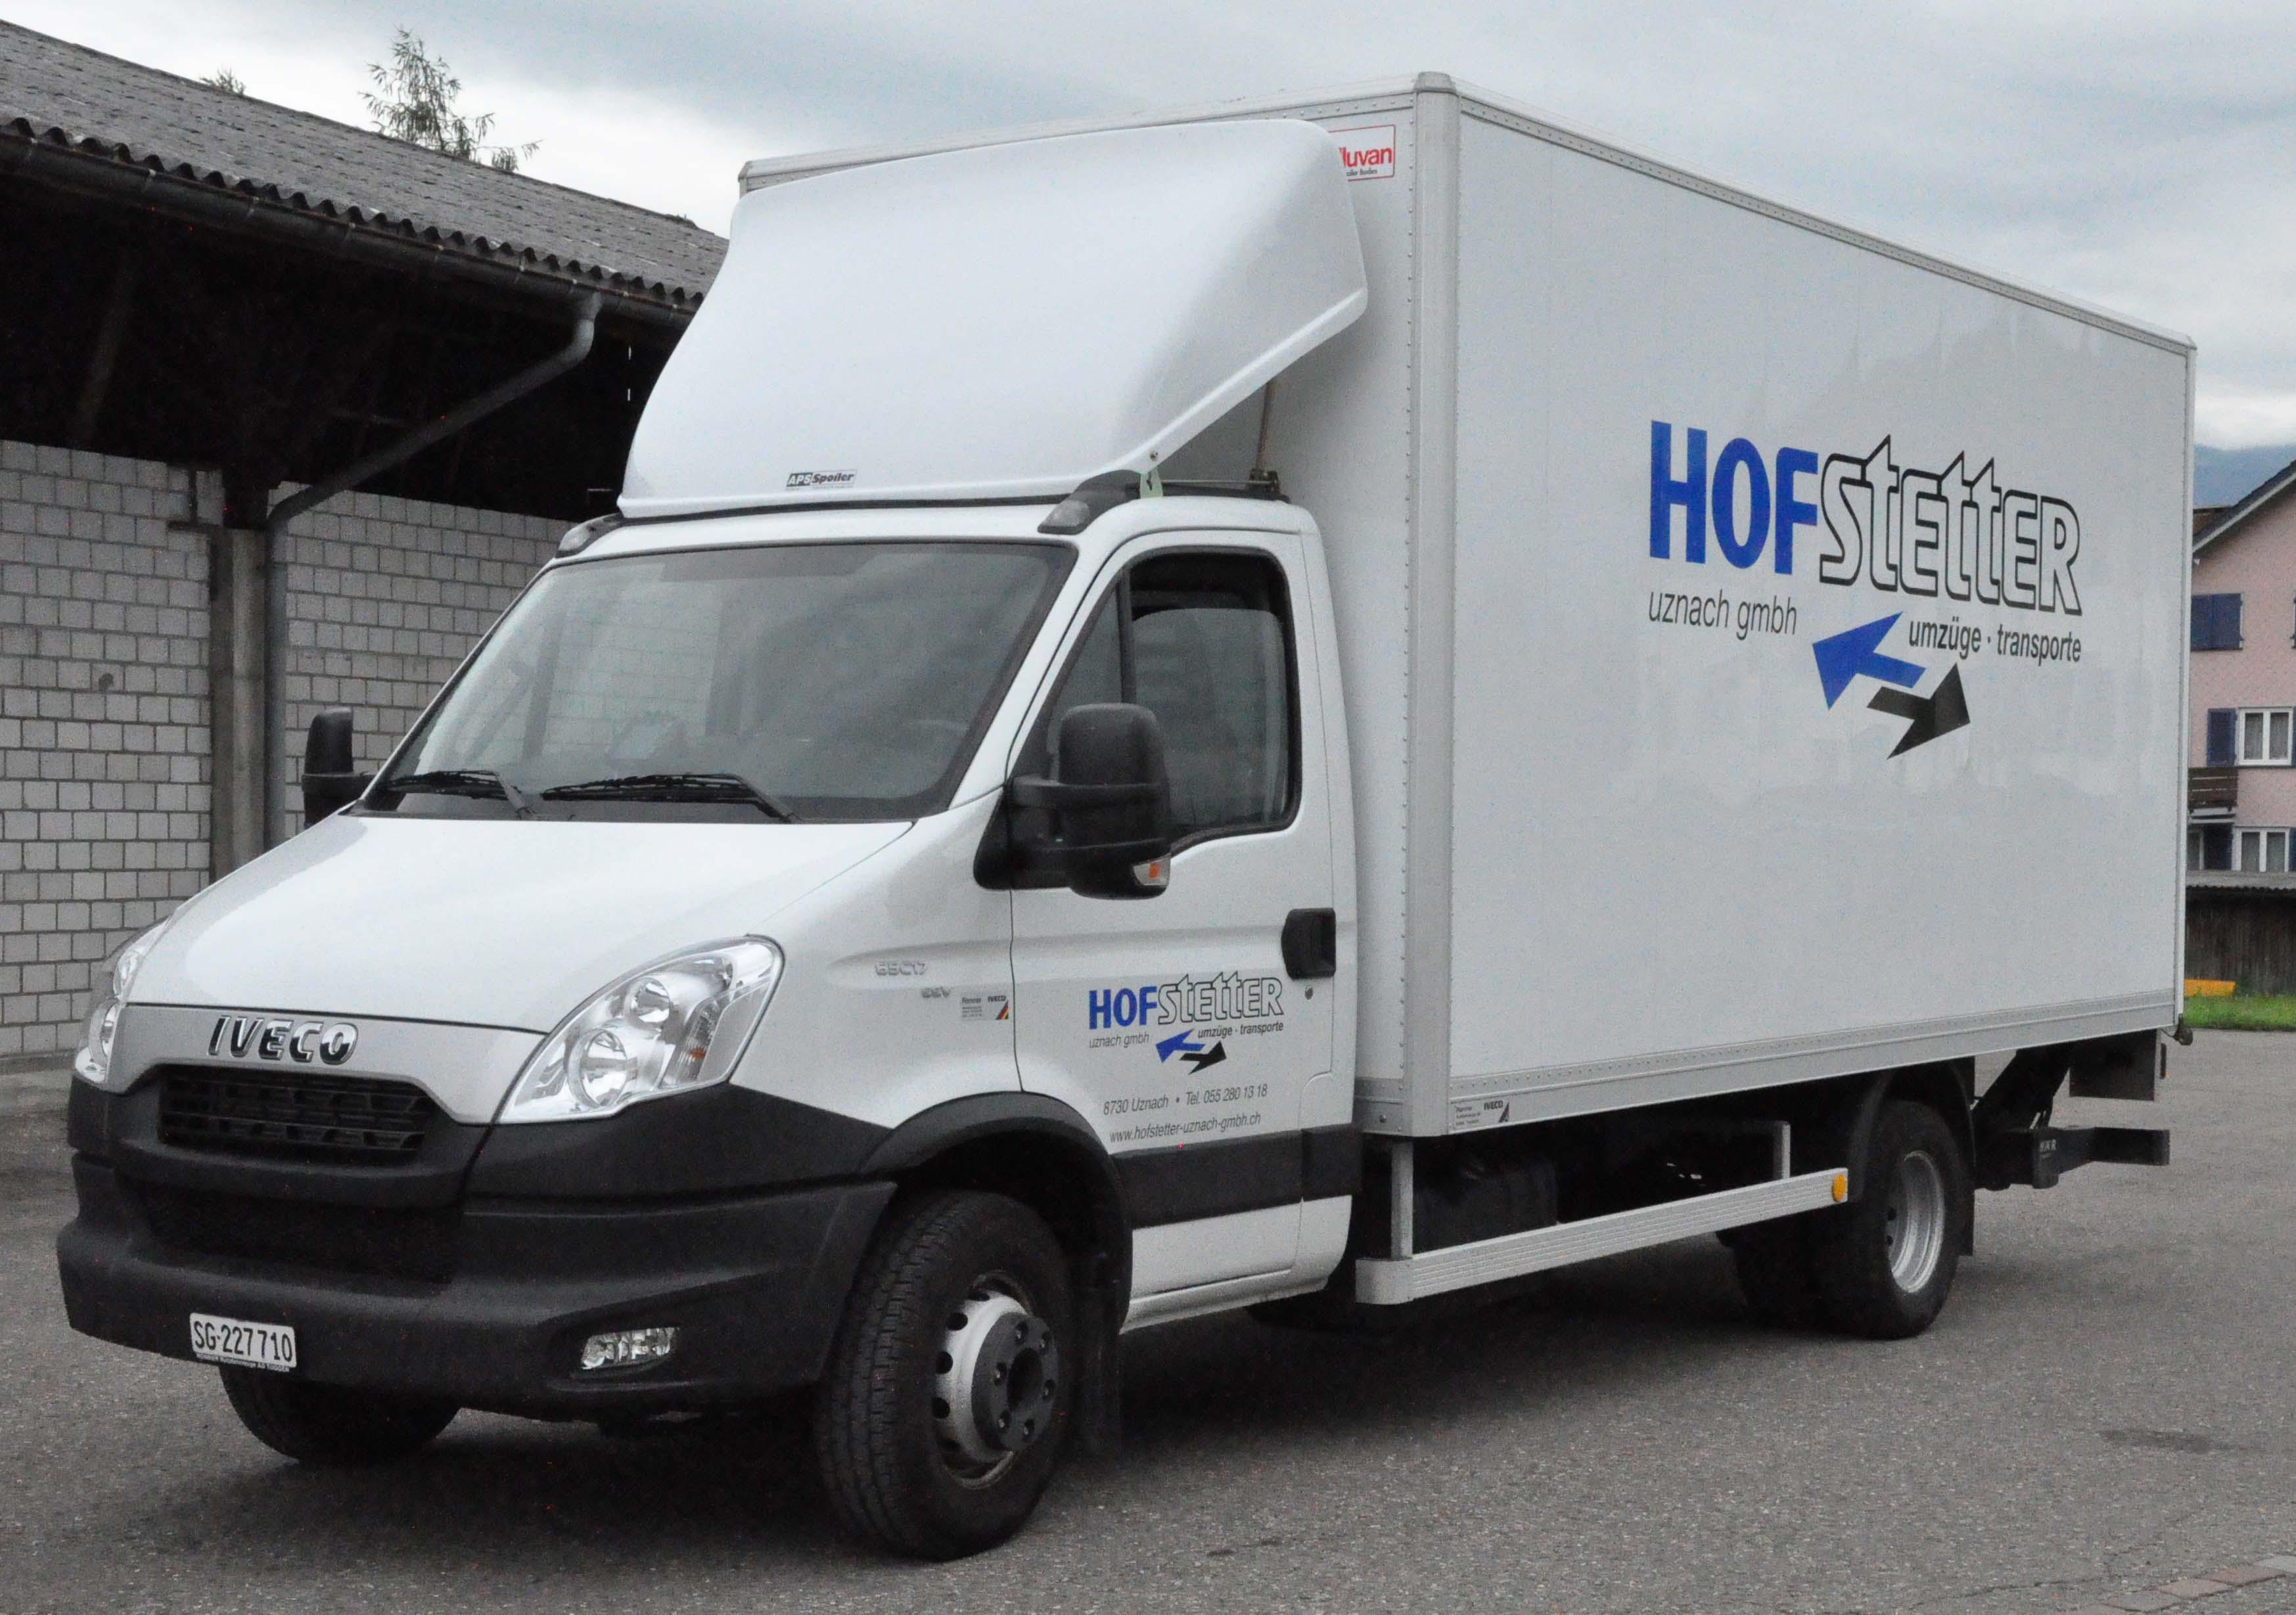 Hofstetter Uznach GmbH, Umzüge Transporte